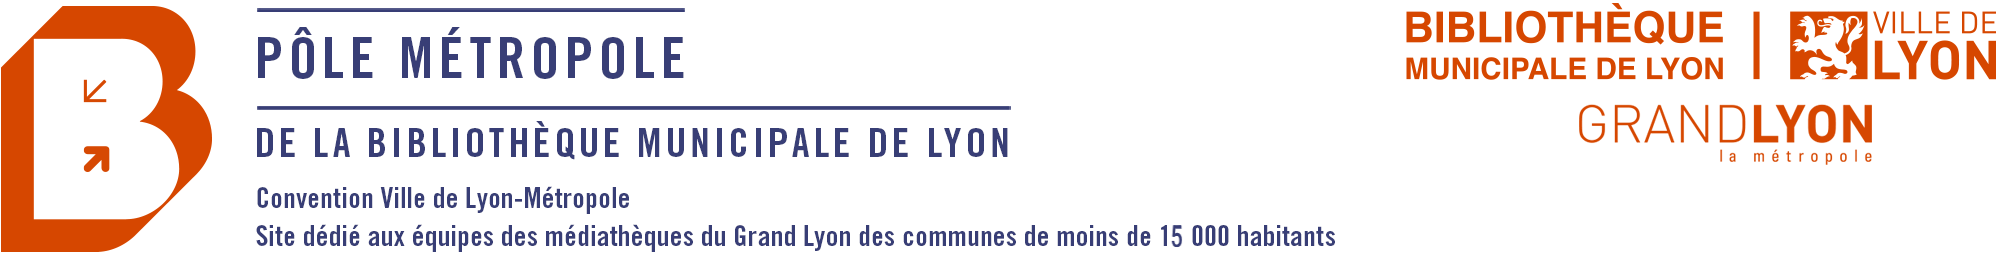 Pôle Métropole de la Bibliothèque municipale de Lyon